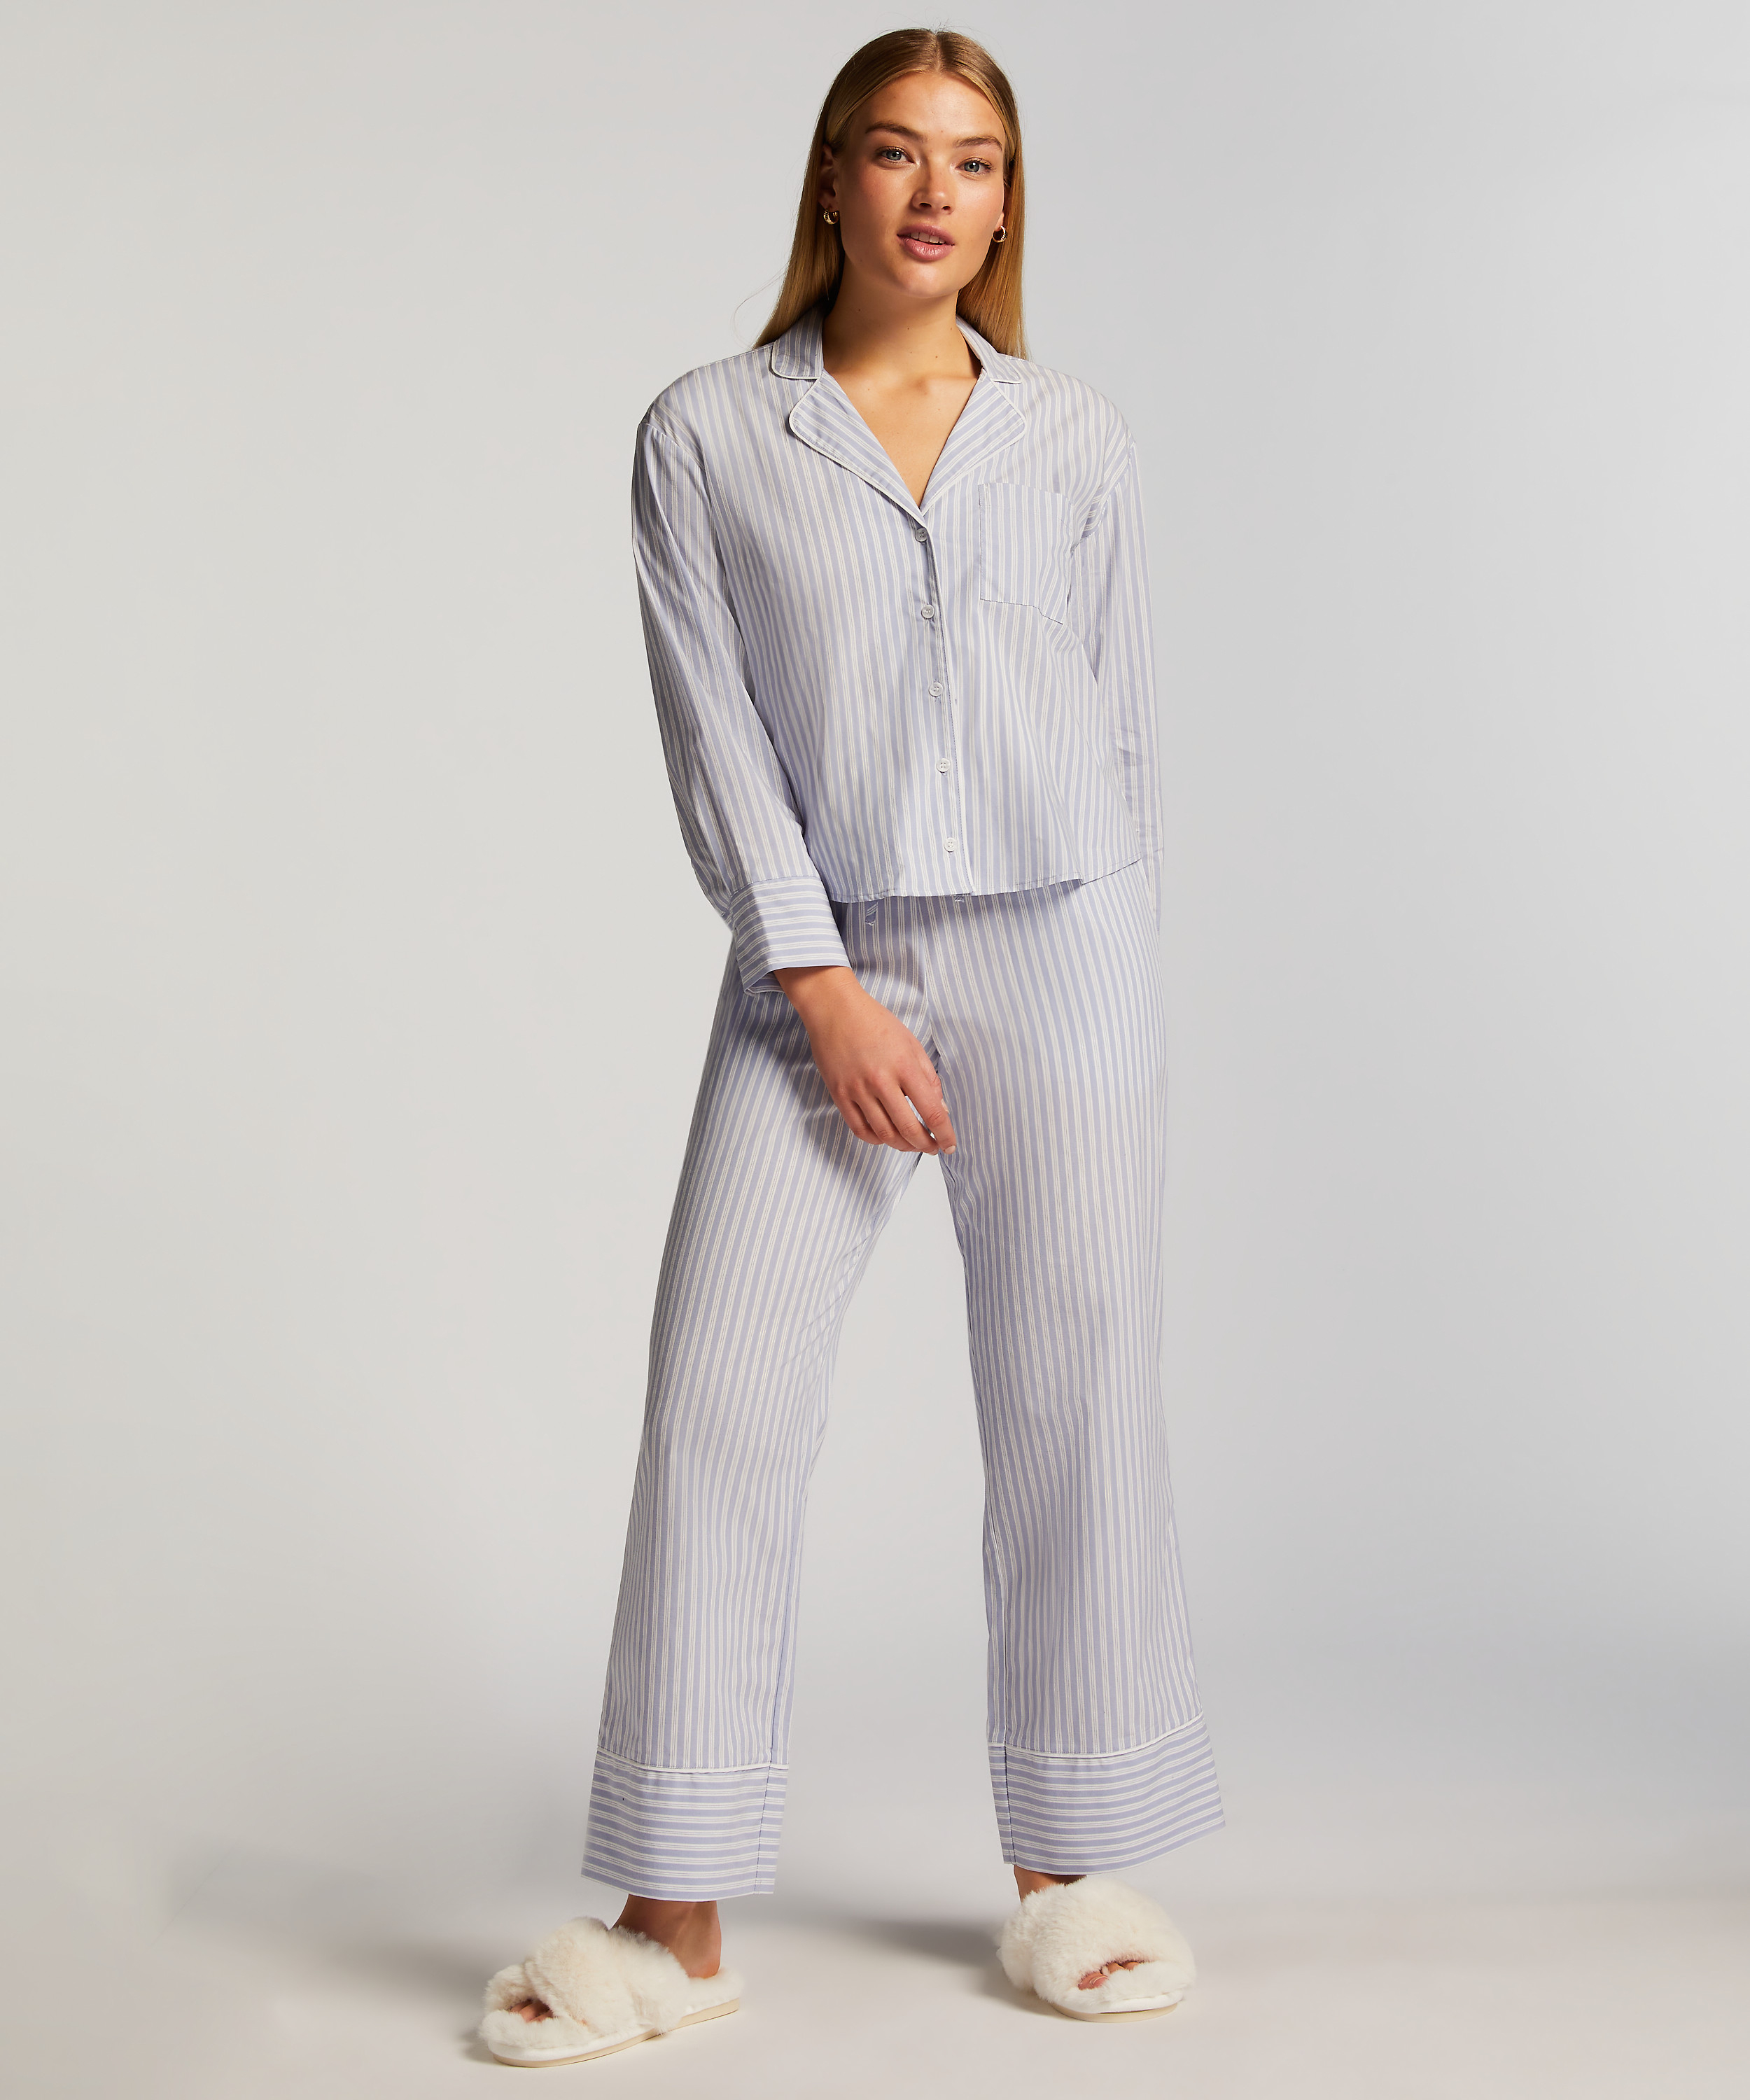 Pyjamasbyxa Stripy, blå, main